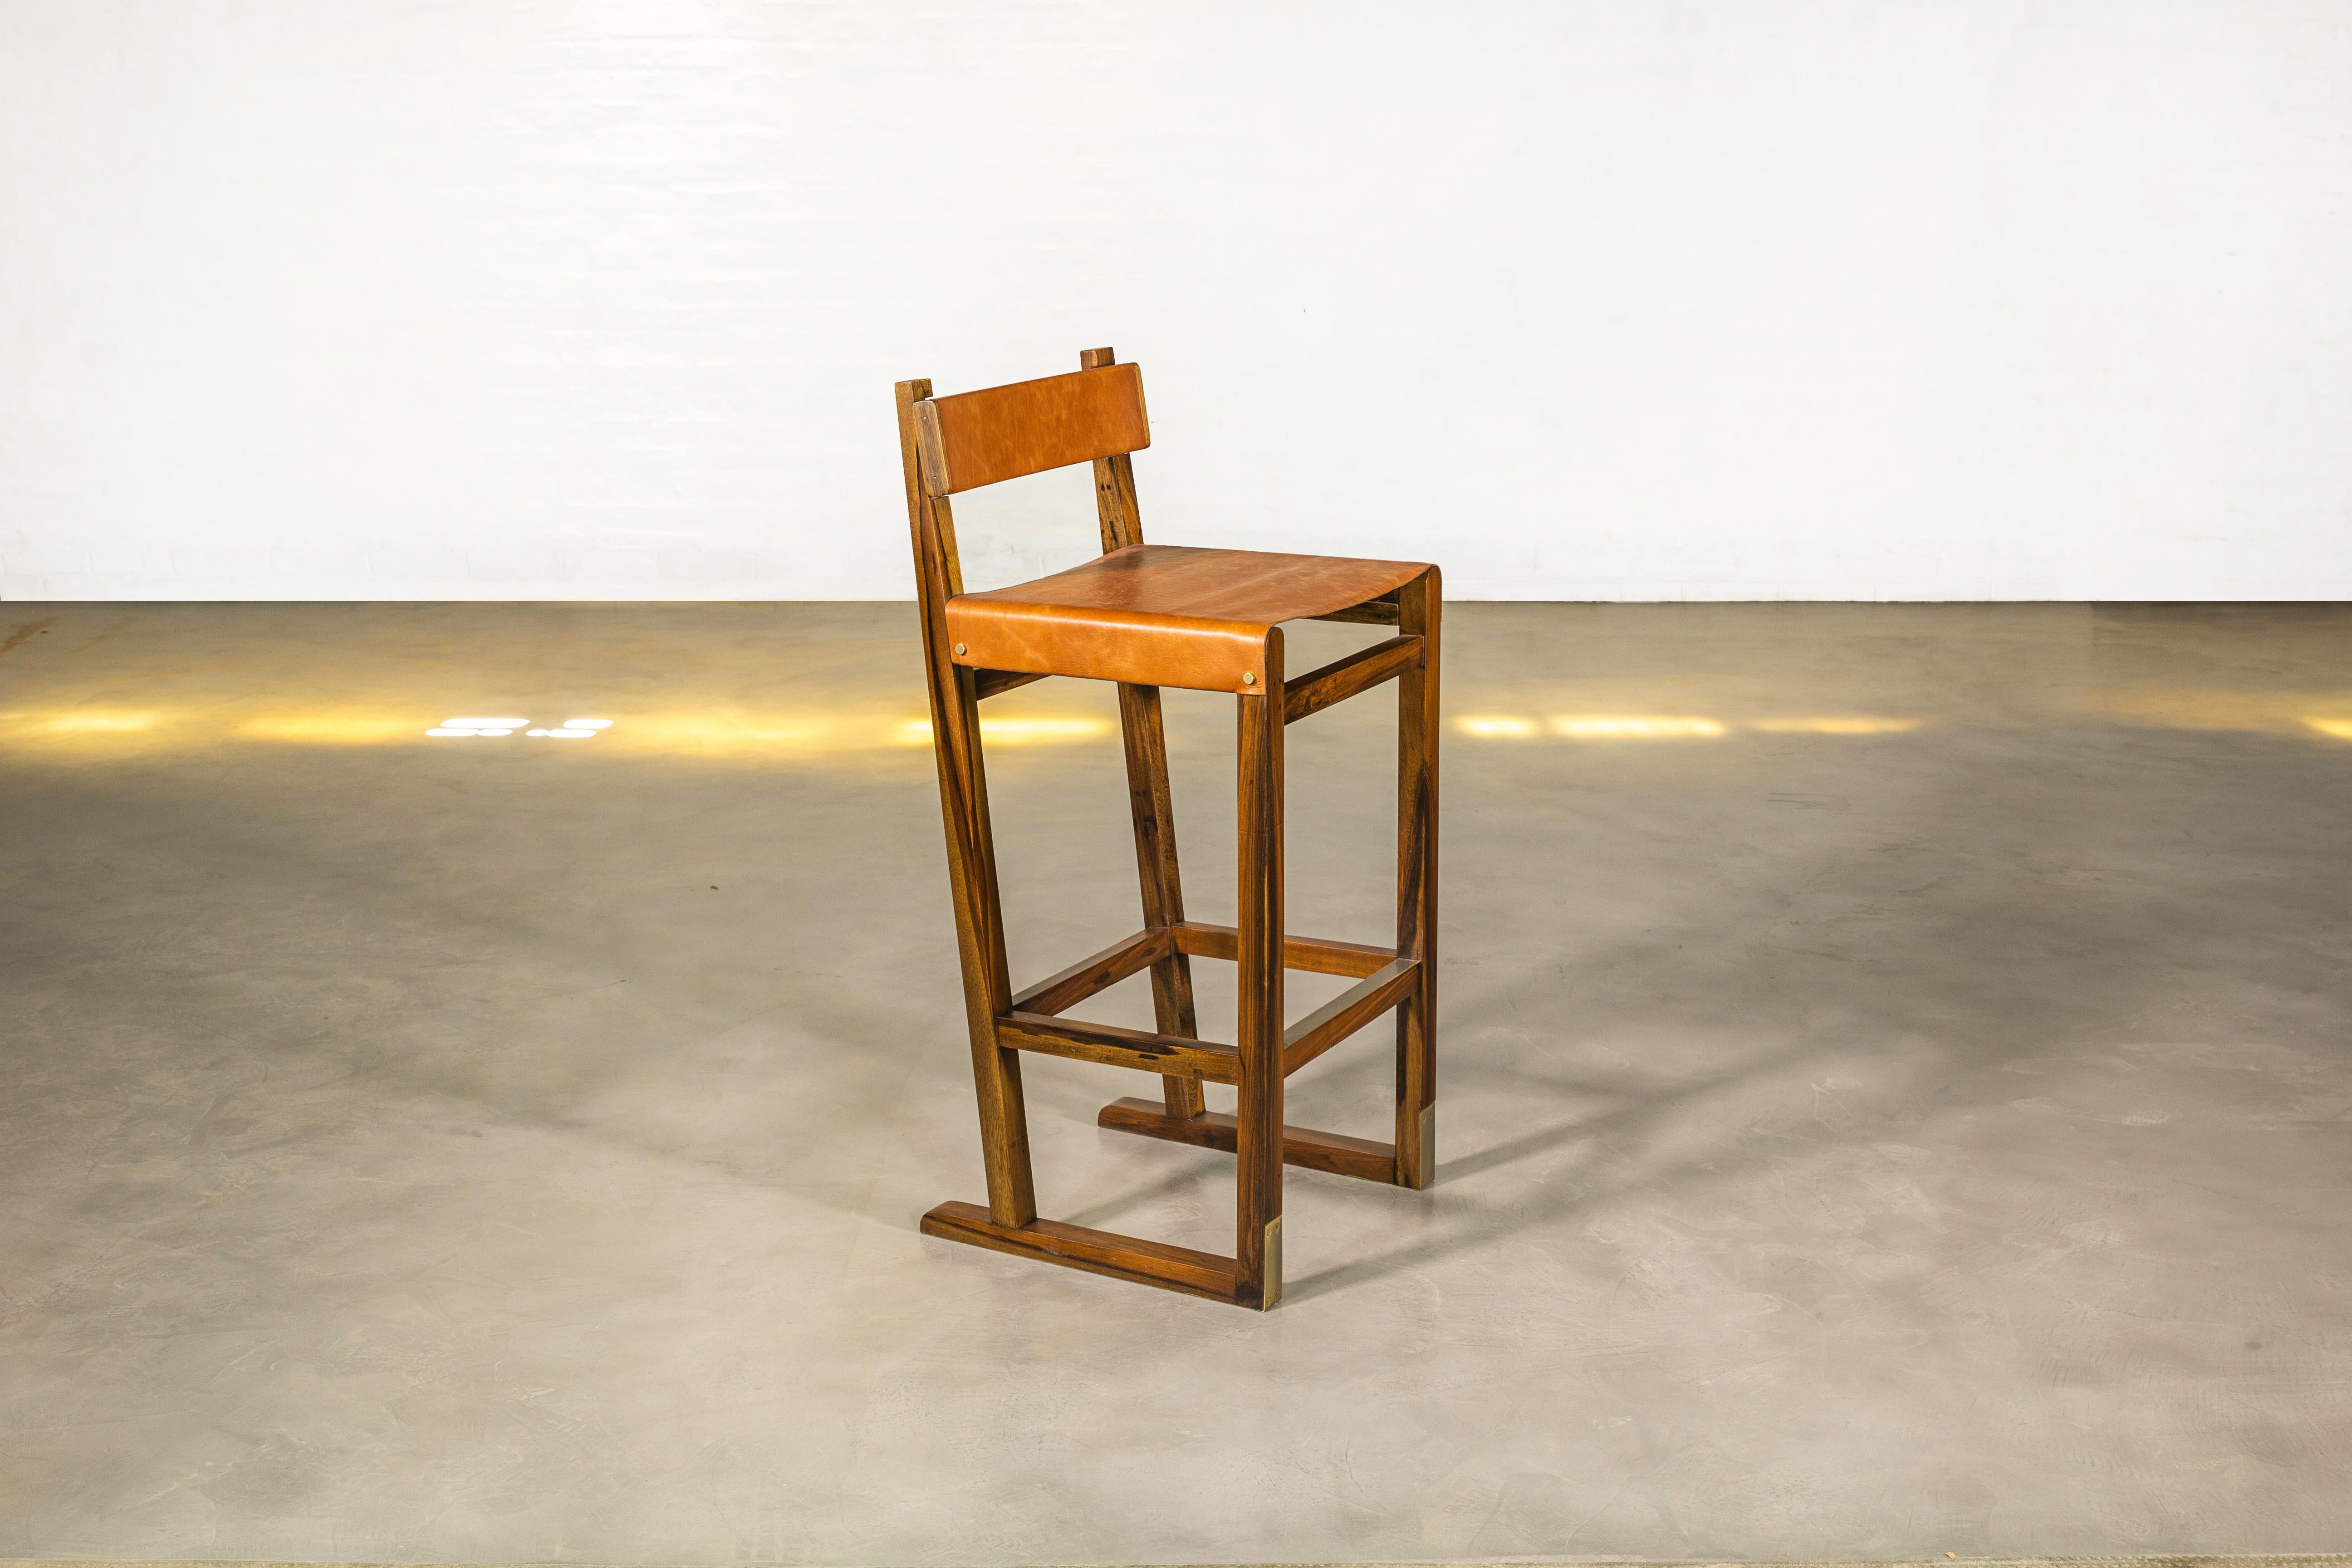 Le tabouret Piero présente une structure angulaire en bois massif avec une assise en cuir, un dossier en bois gainé de cuir et un repose-pieds en bronze bruni. Disponible dans n'importe quelle couleur de cuir ou dans le matériau d'ameublement de